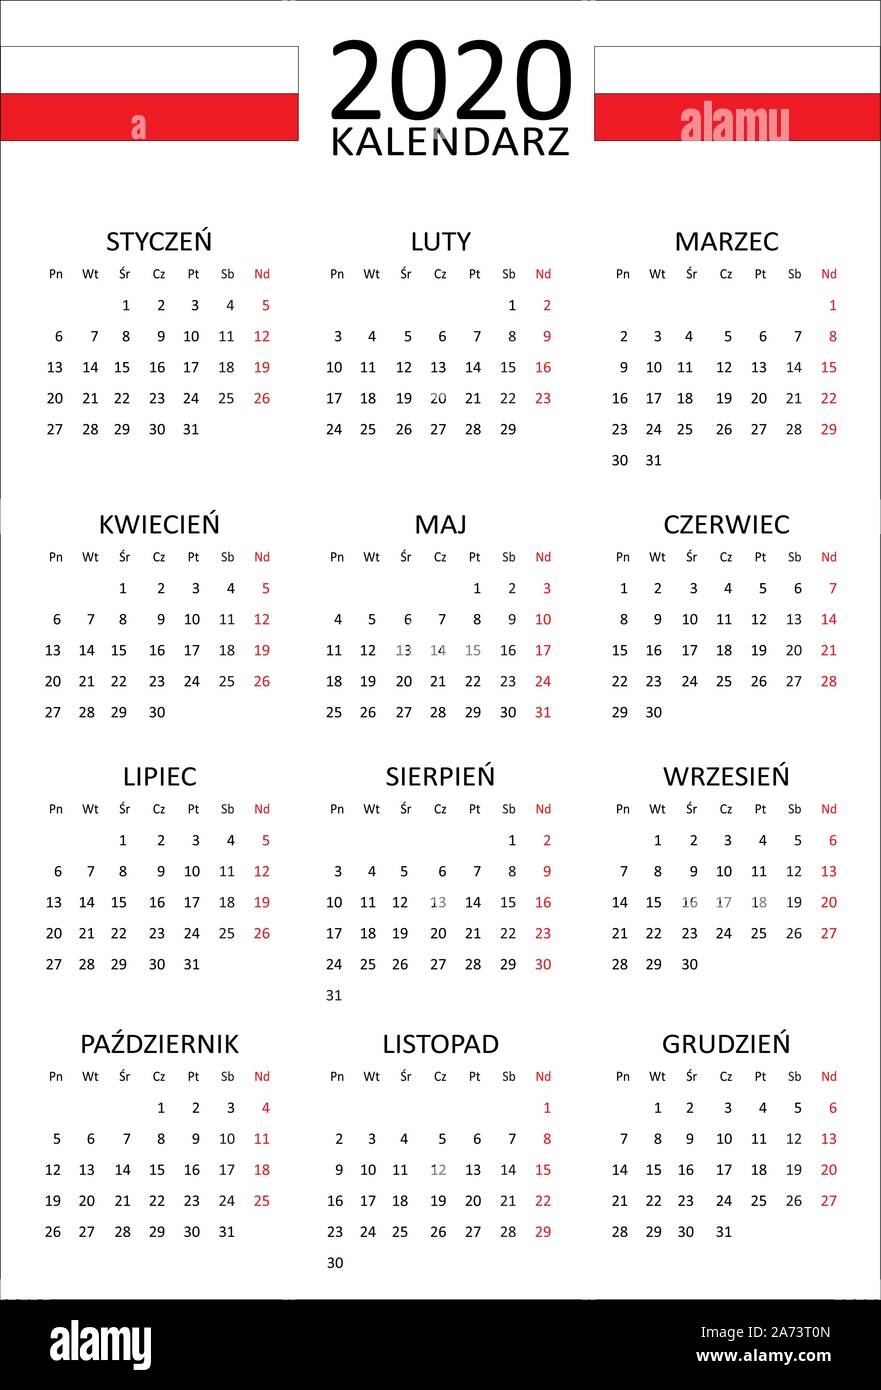 Calendrier polonais pour 2020. 12 mois sur une seule page. Début de semaine à partir de lundi. Style propre et transparent. Mise en page Calendrier monochrome. Illustration de Vecteur